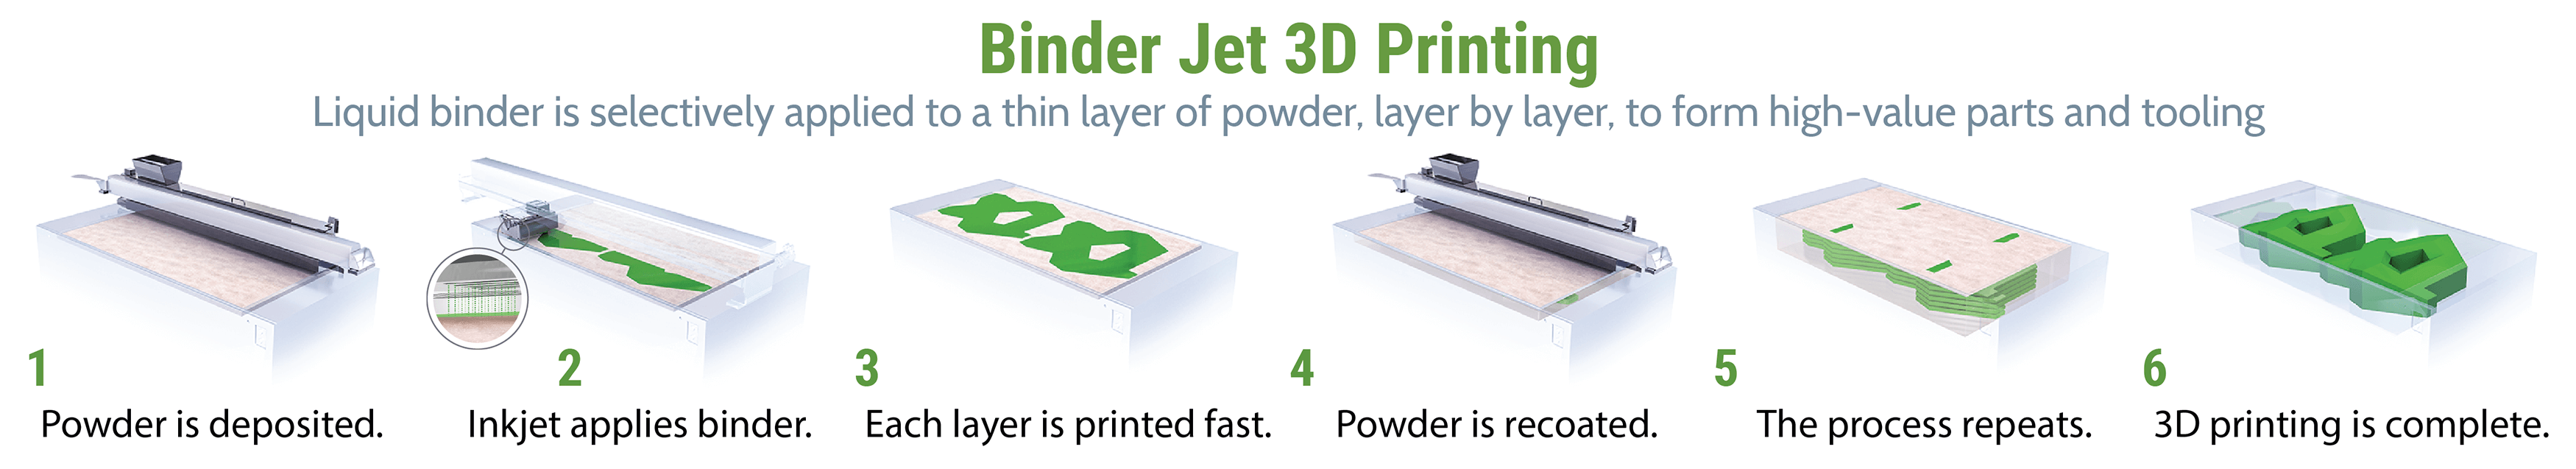 Binder Jetting, procédé d'impression 3d metal (Jet de liant)